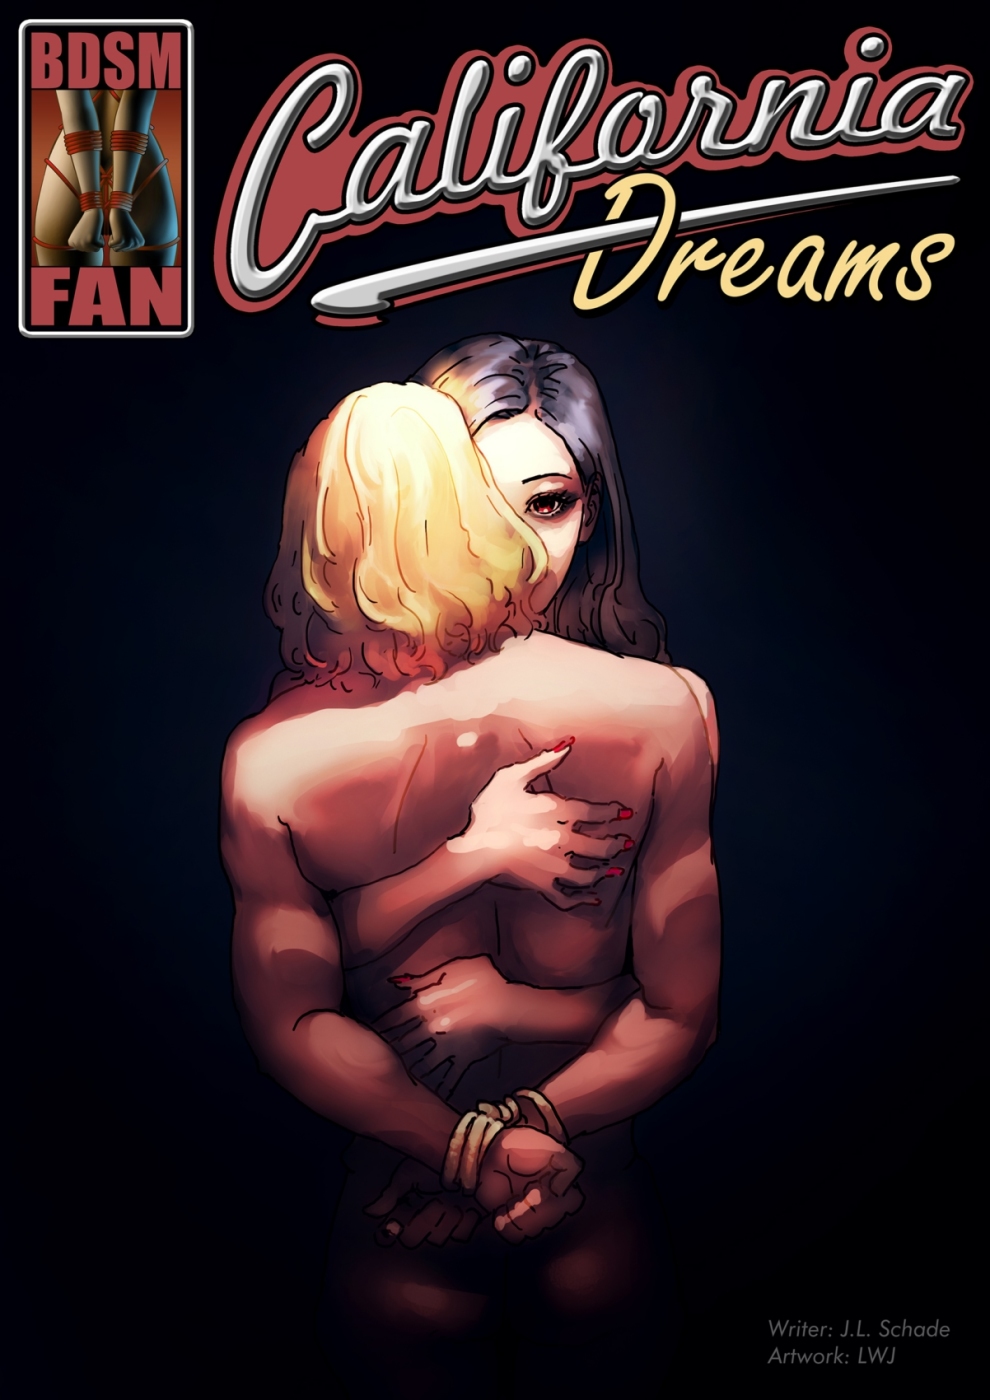 BDSM Fan California Dreams Porn Comics